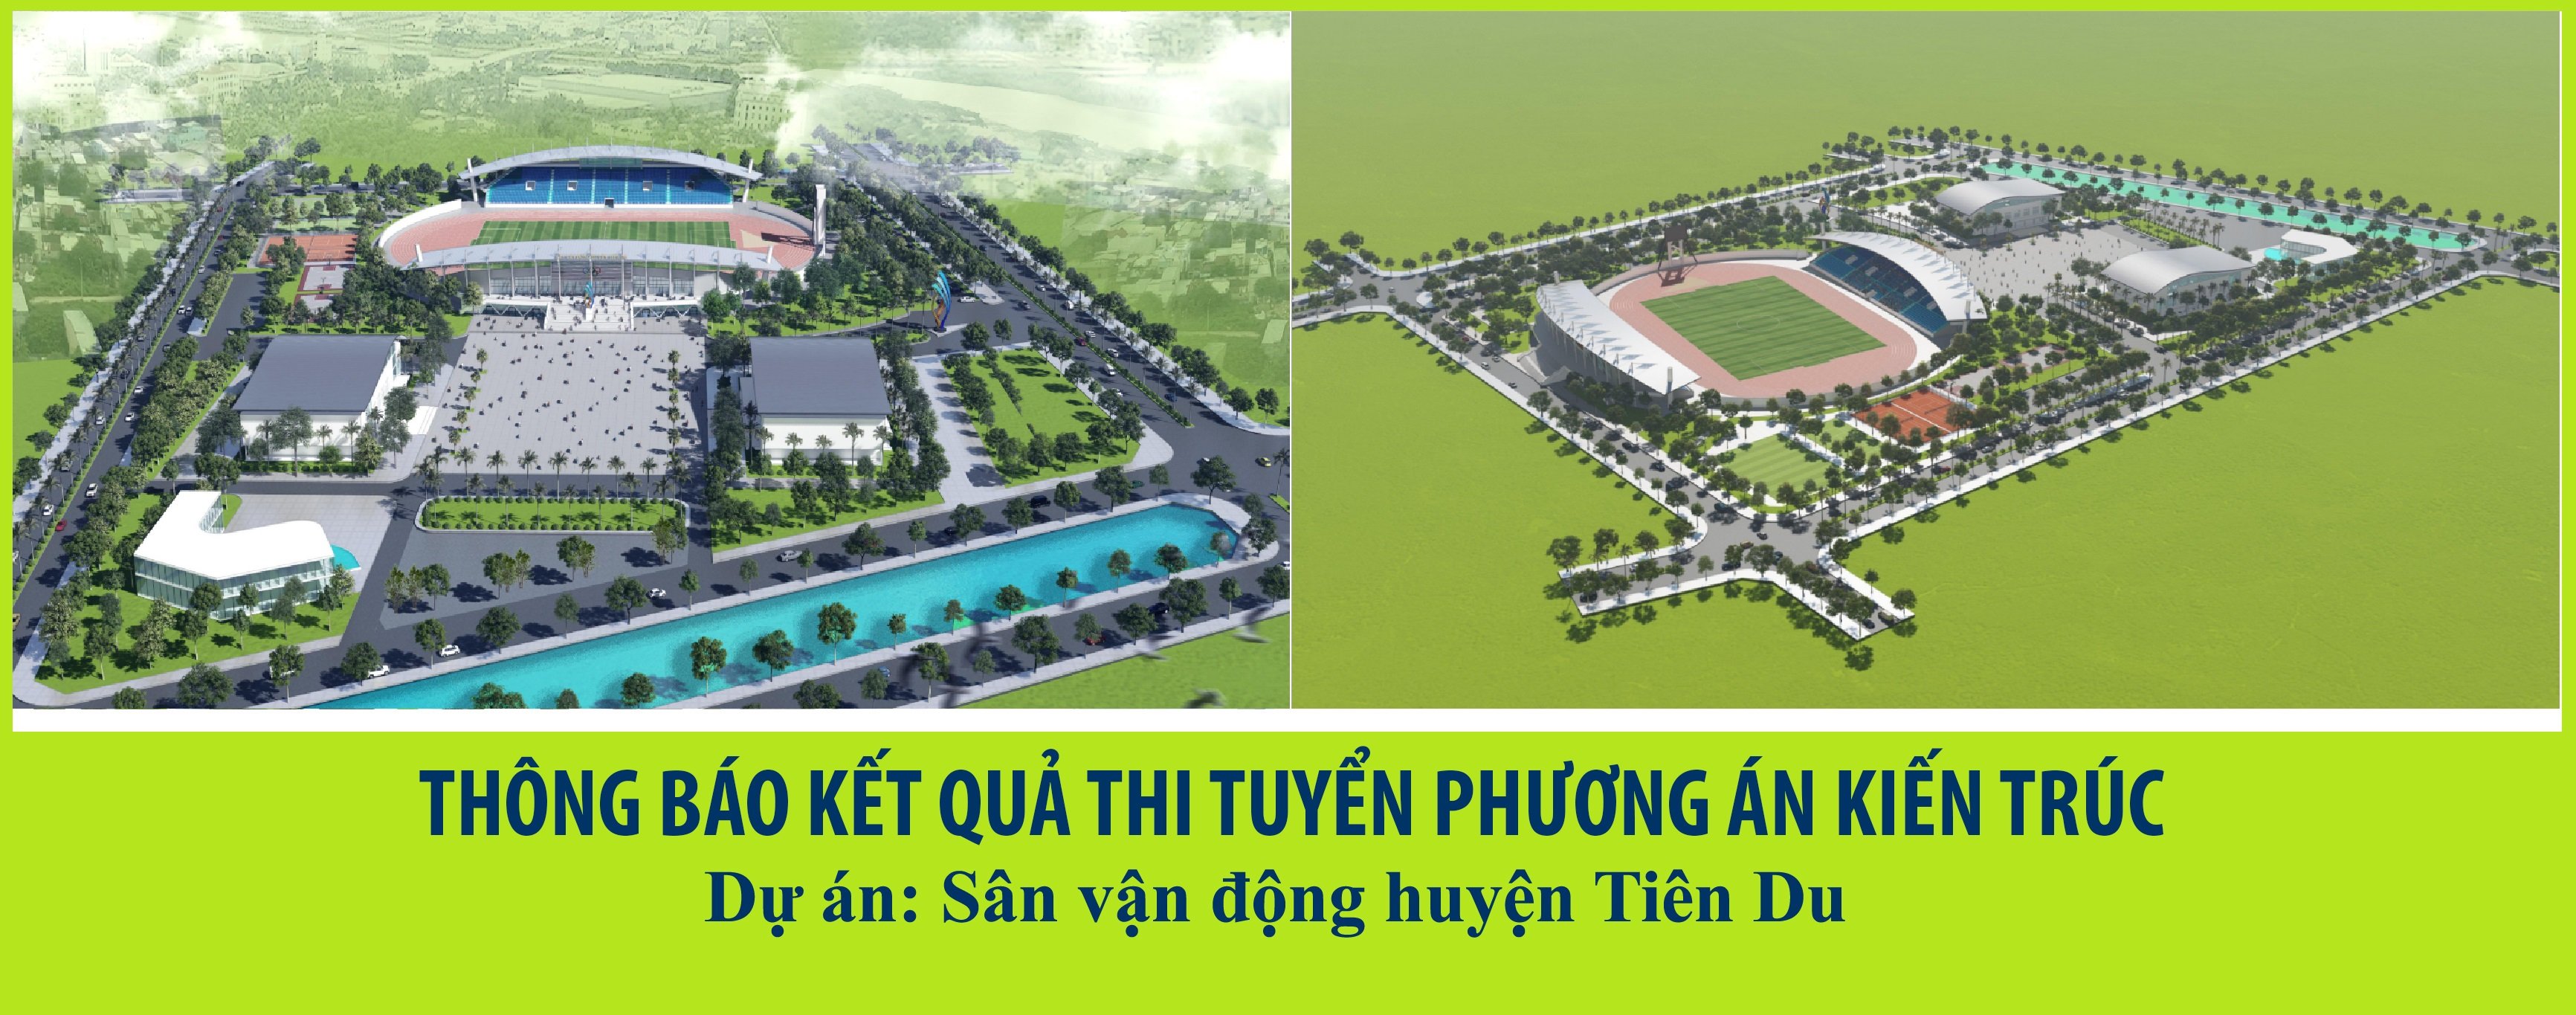 Thiết kế SVĐ huyện Tiên Du.jpg